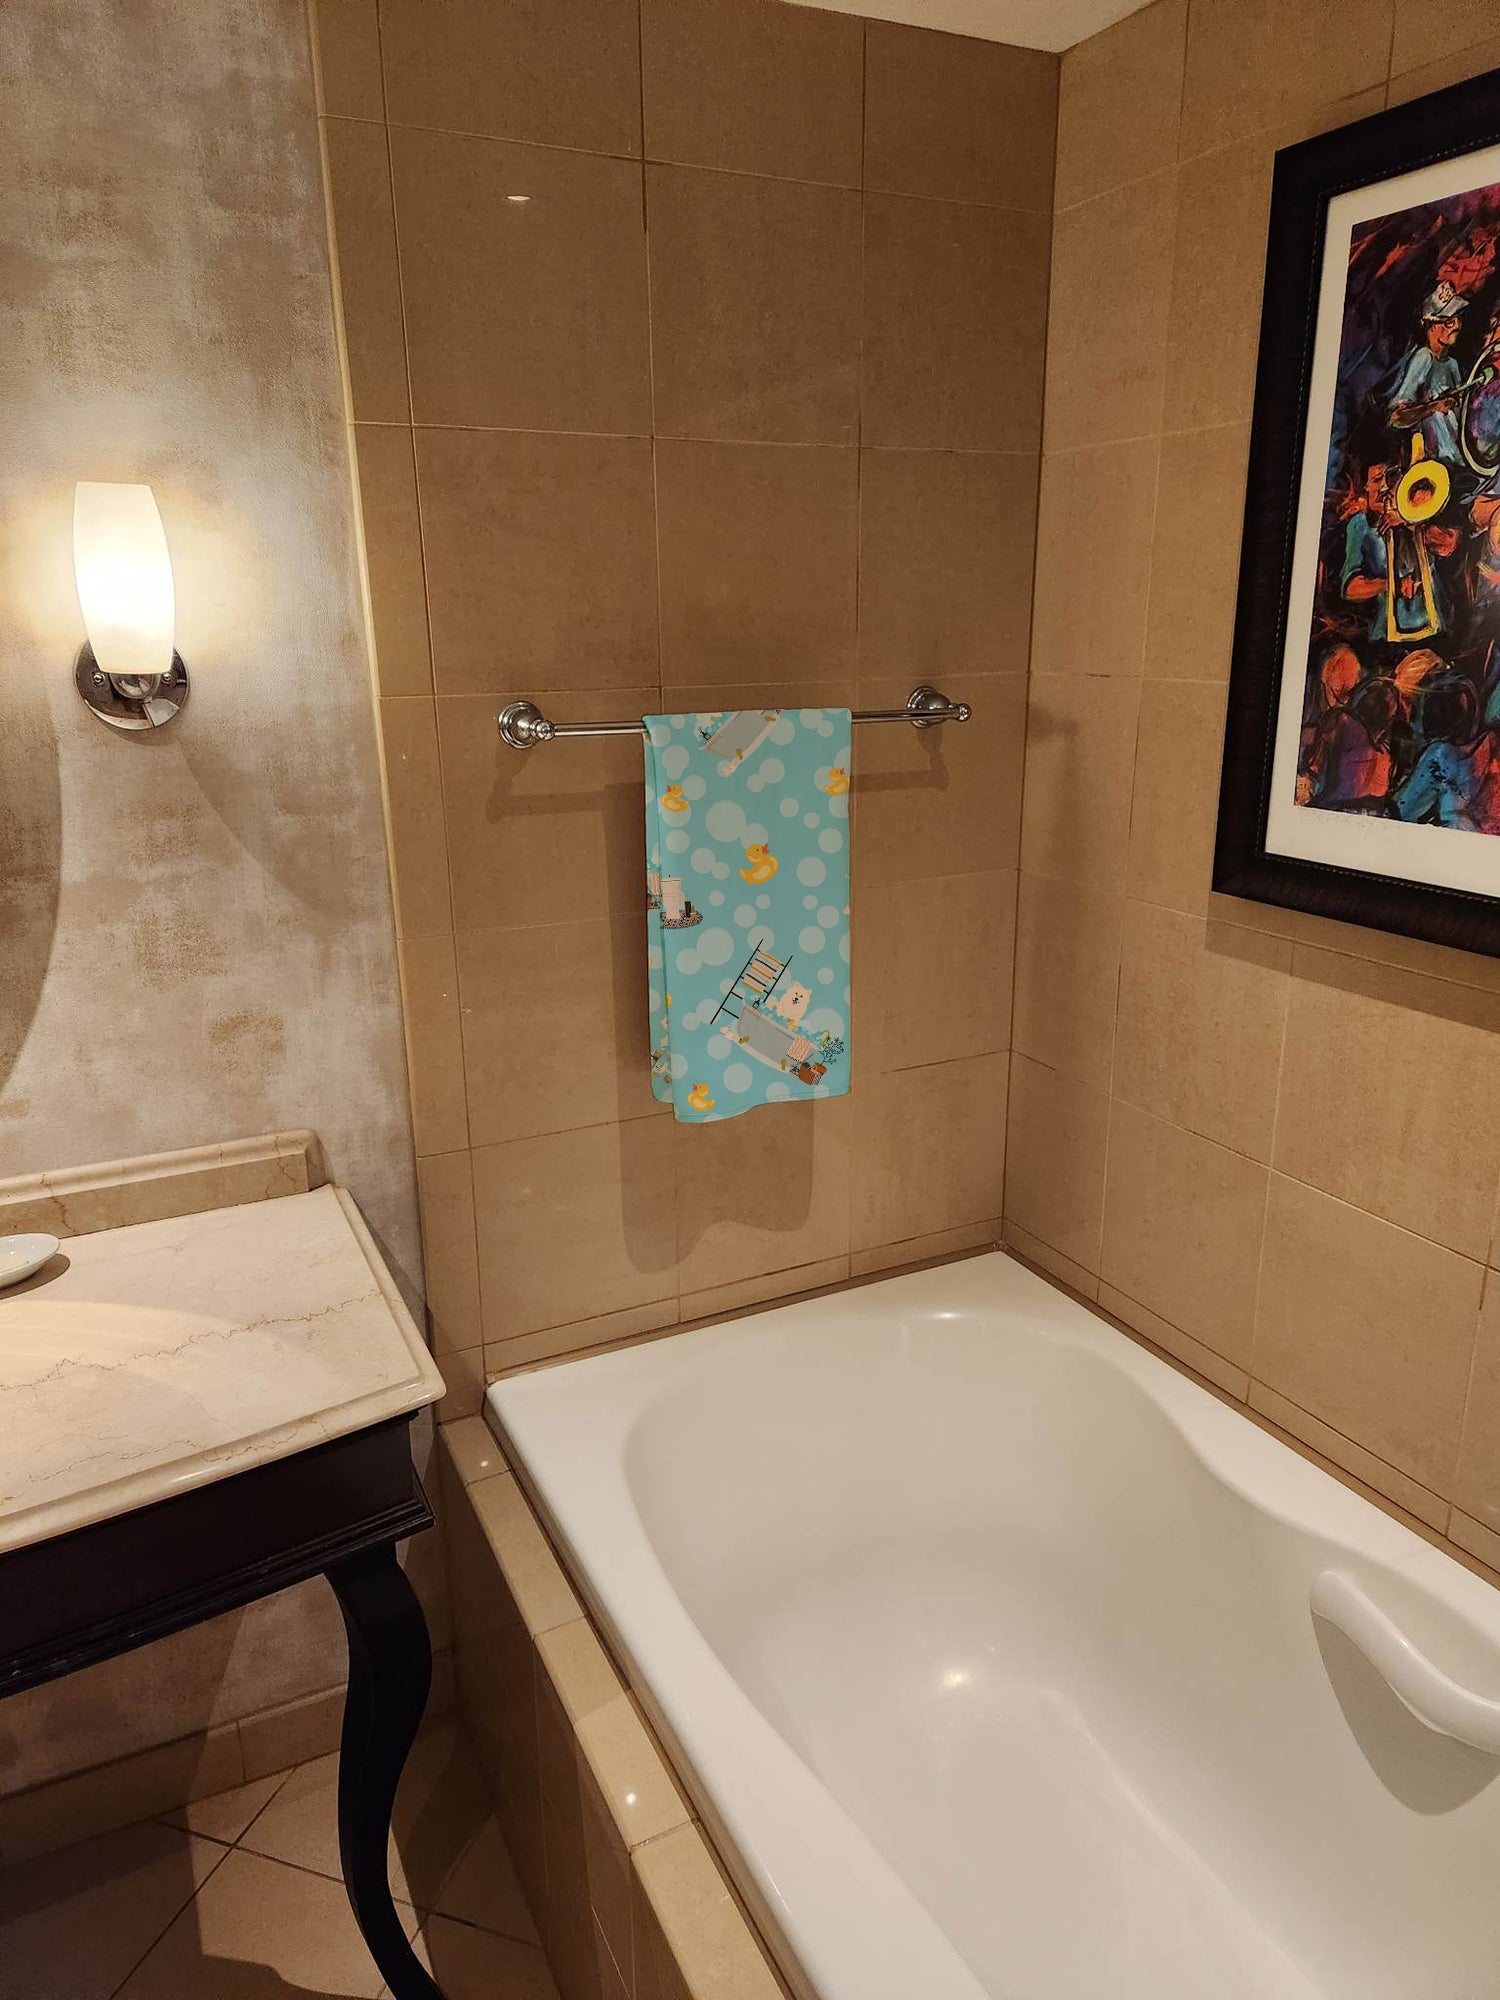 Samoyed in Bathtub Bath Towel Large